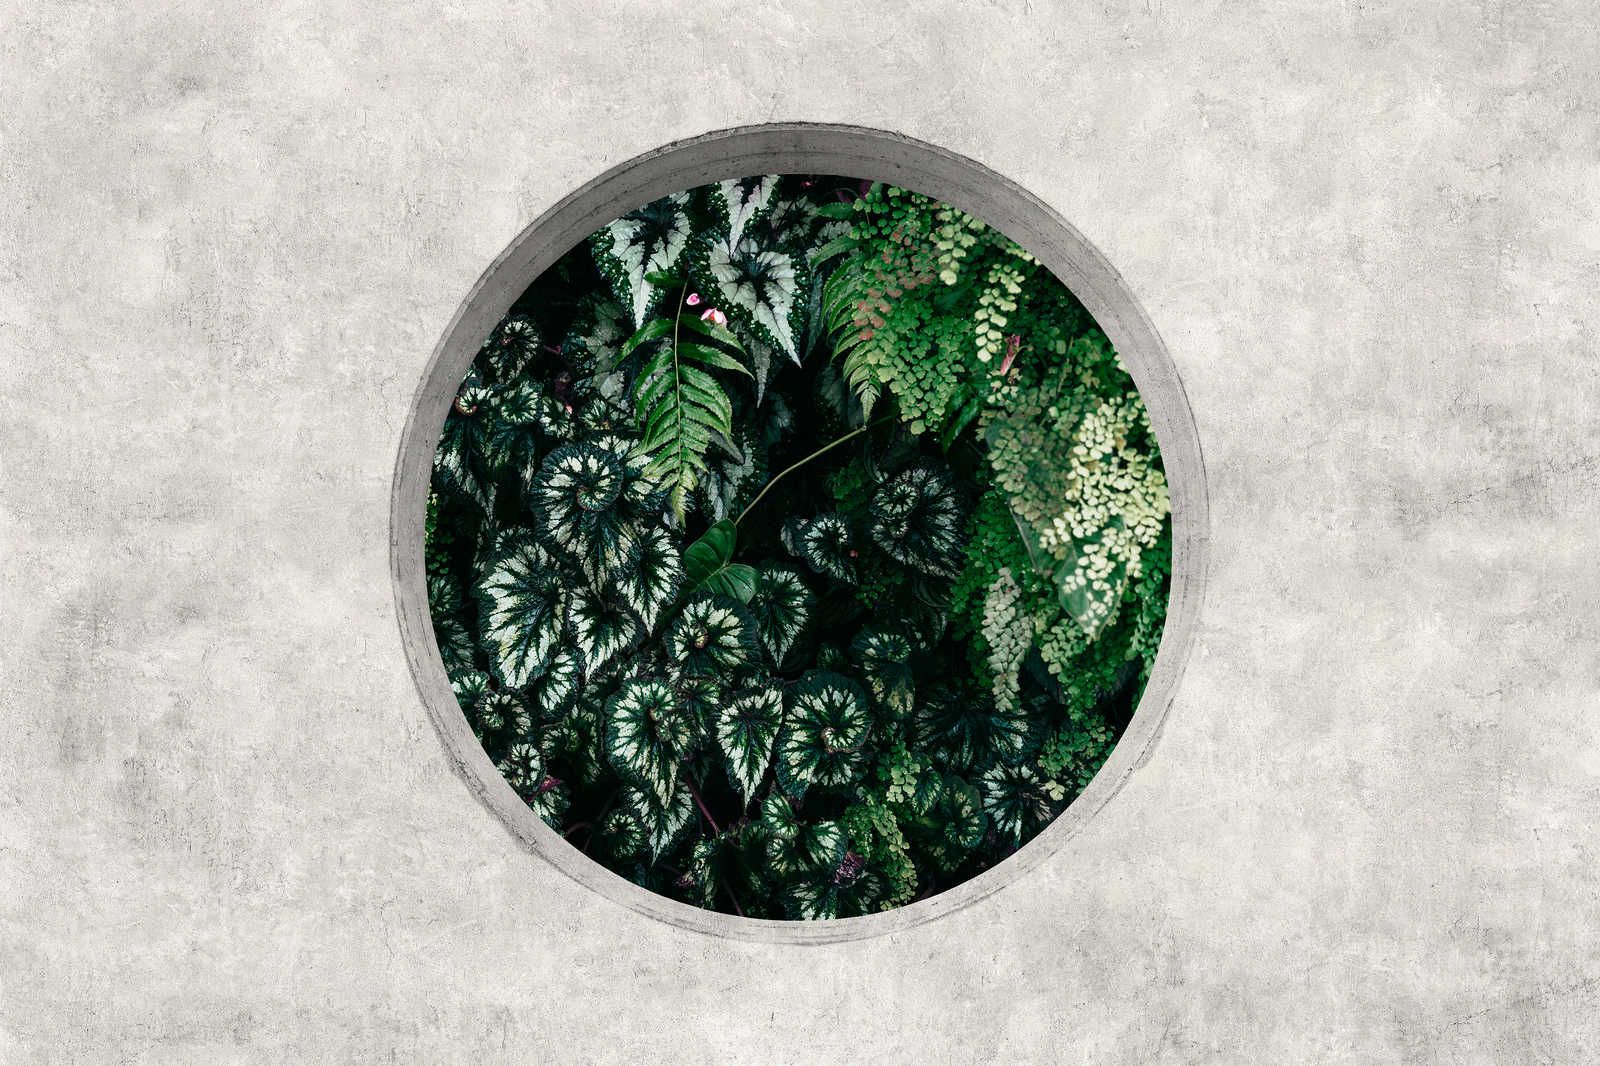             Deep Green 1 - Quadro su tela per finestre con piante della giungla - 0,90 m x 0,60 m
        